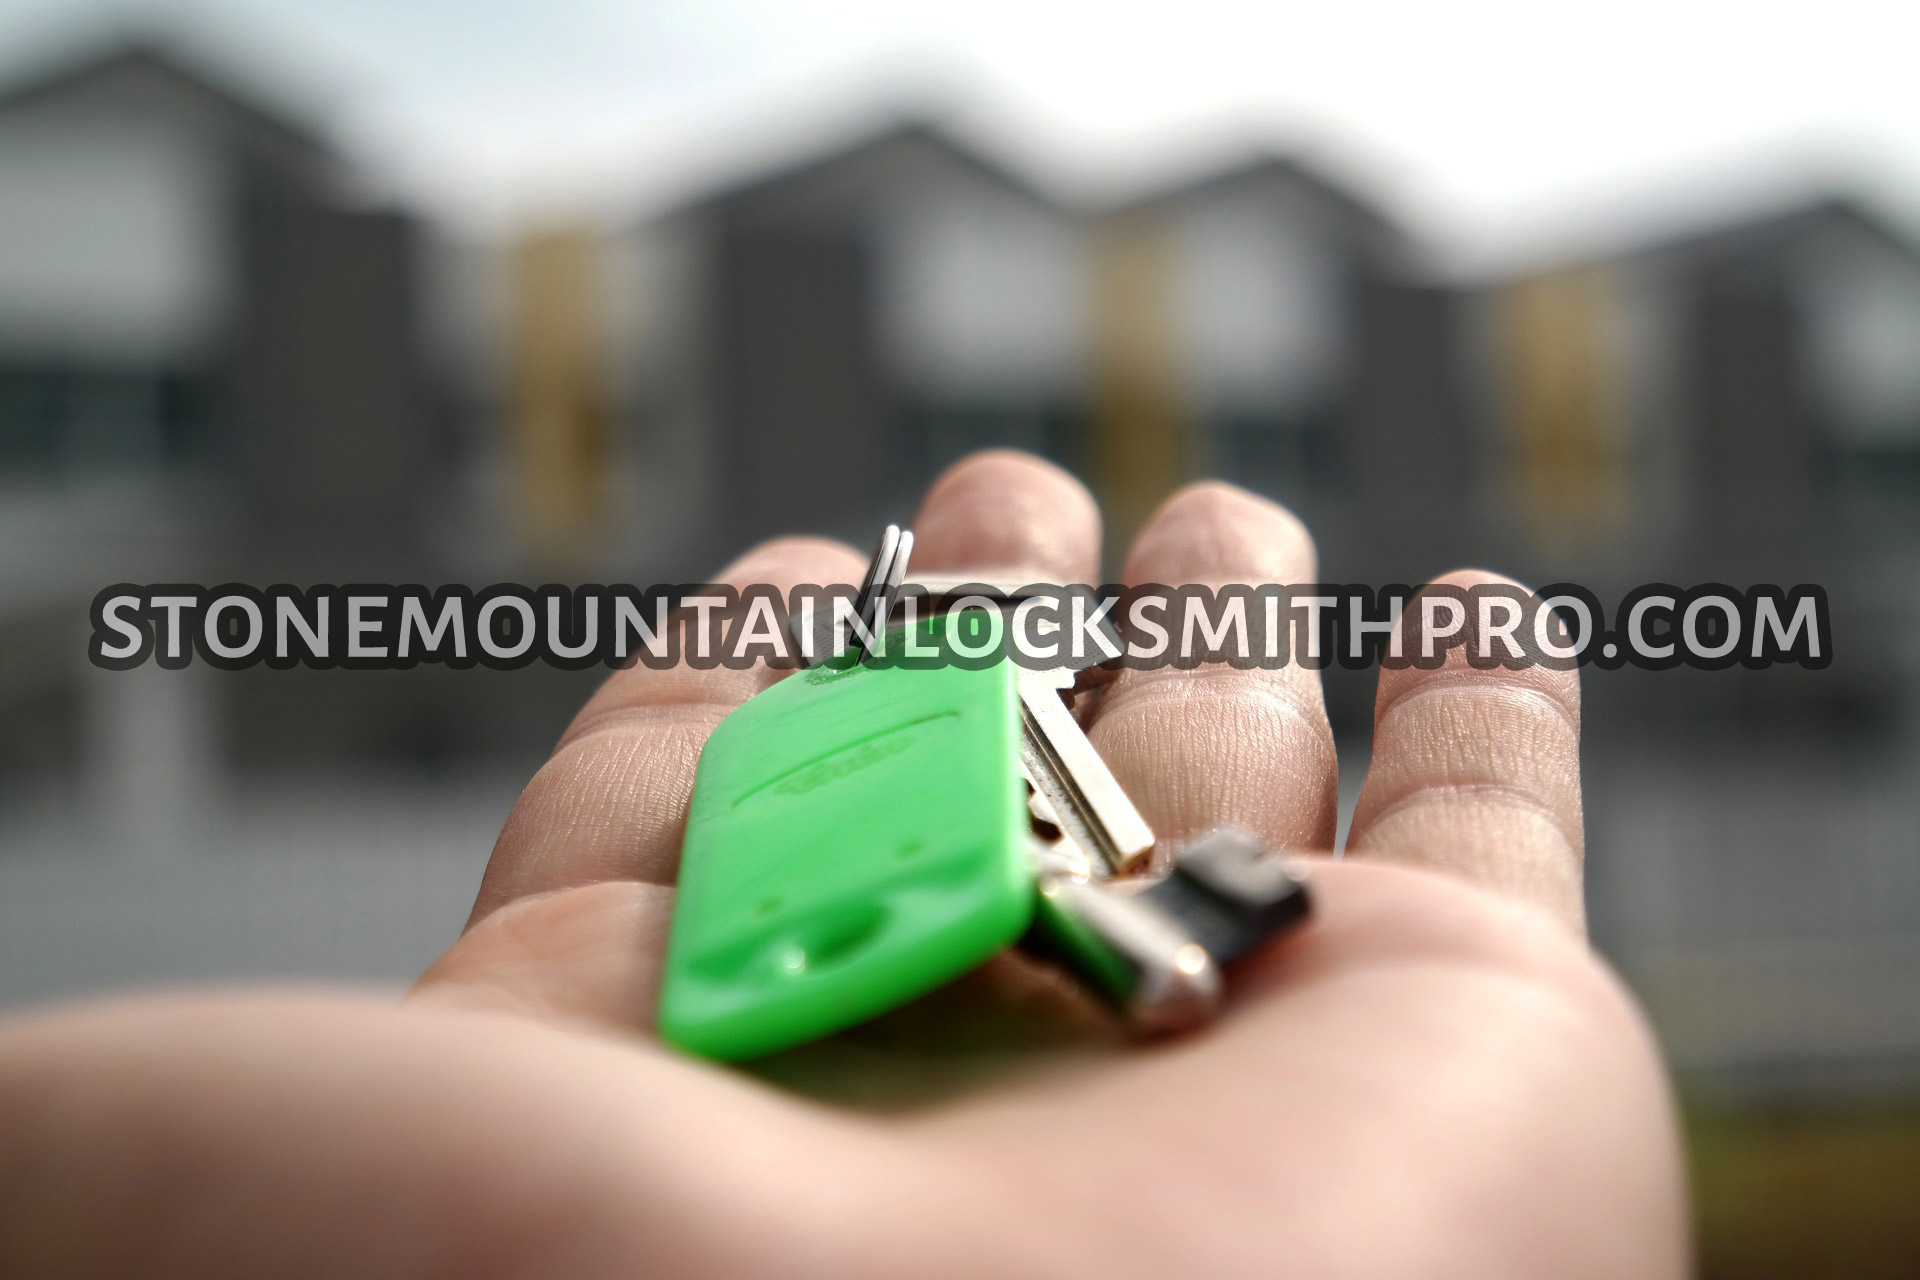 Stone Mountain Locksmith Pro